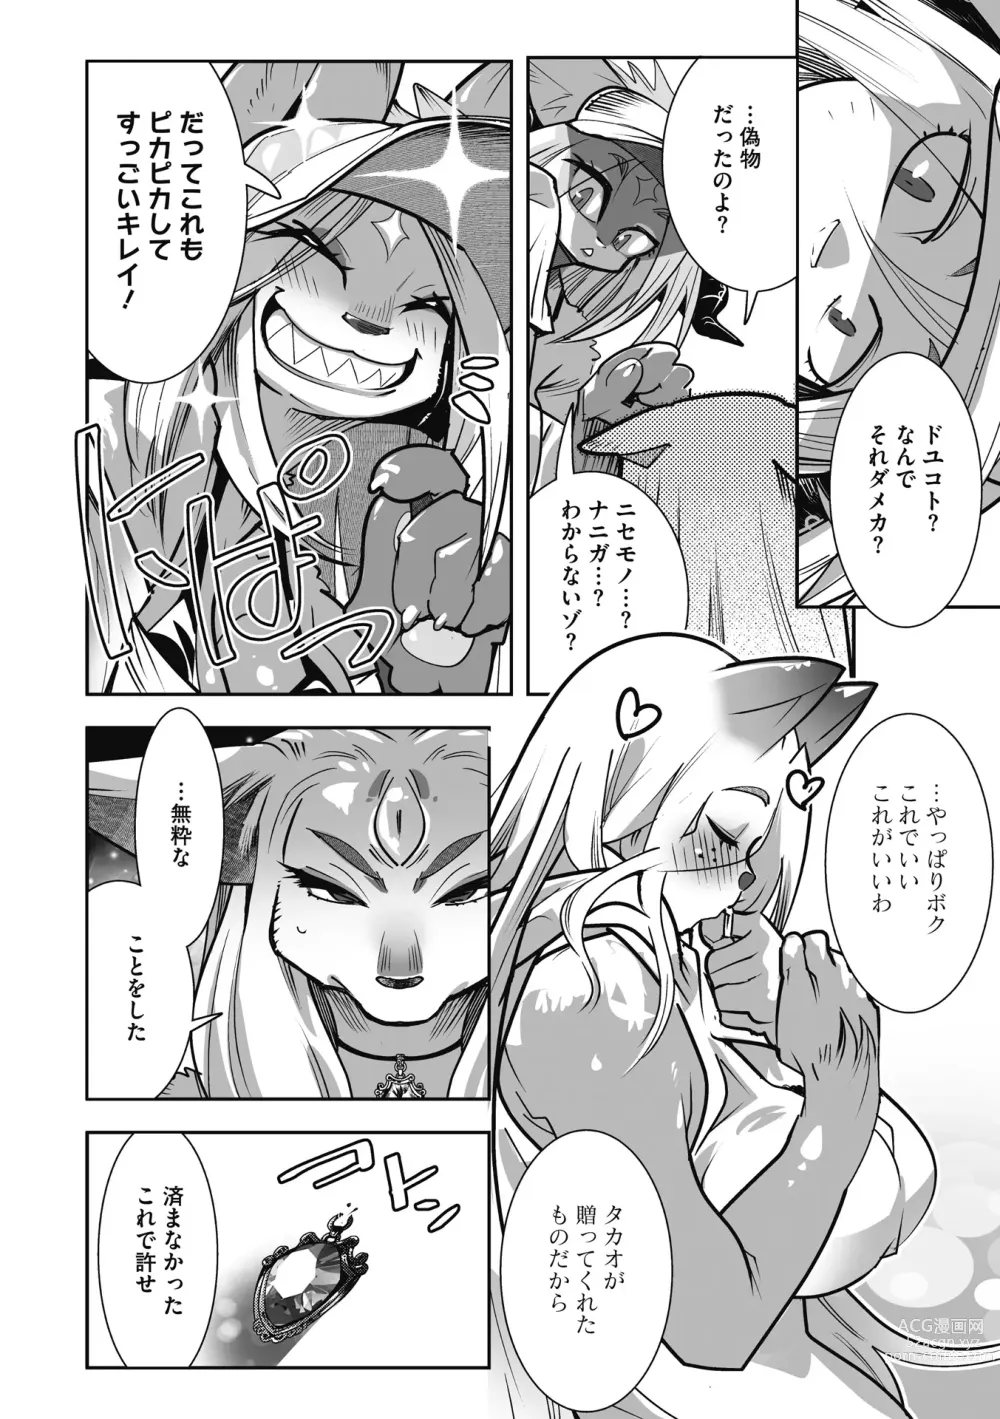 Page 230 of manga Kemono to Koishite Nani ga Warui!